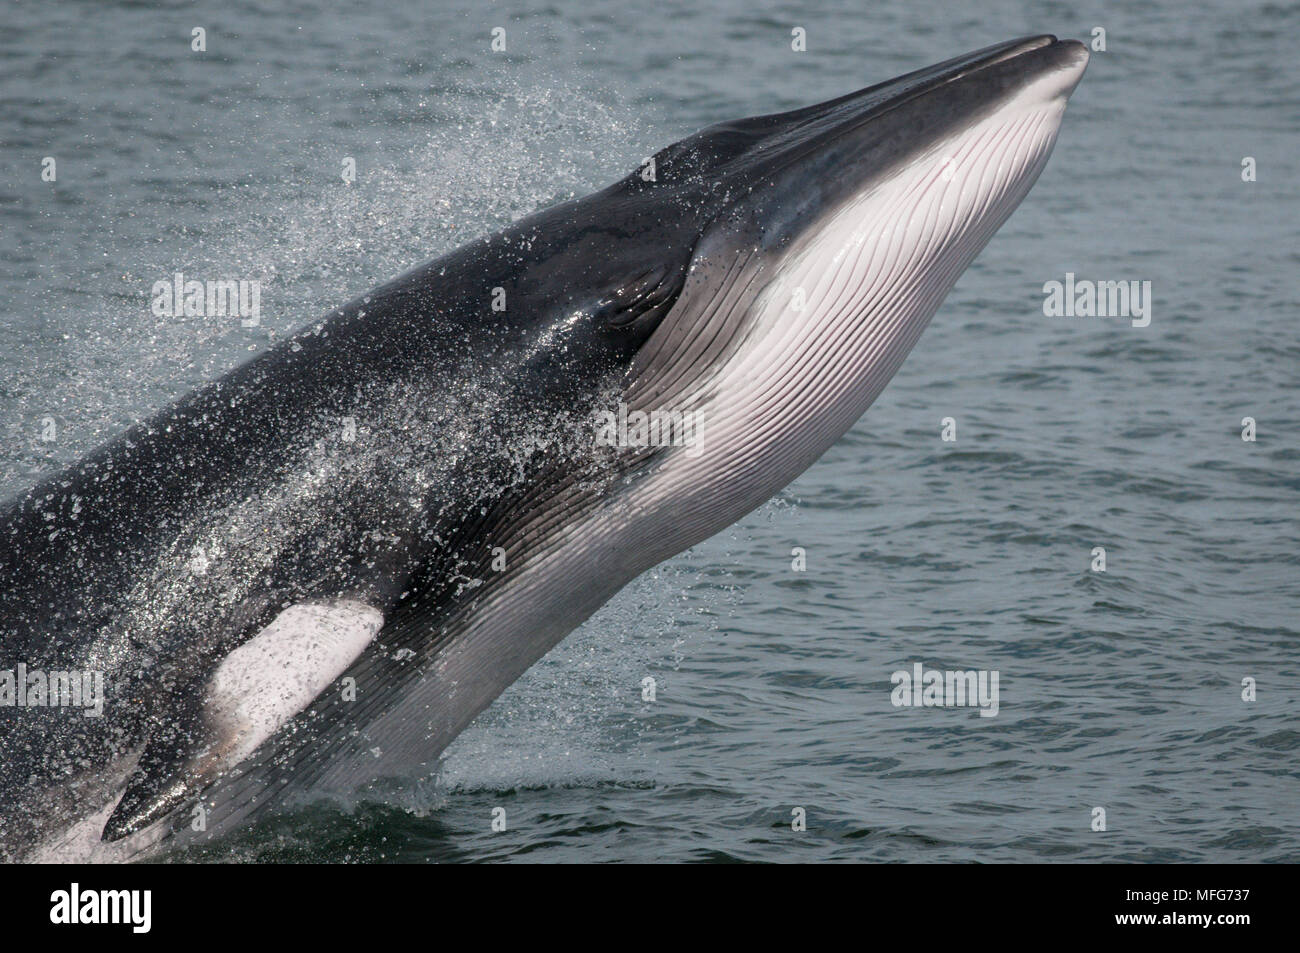 Шерсть у китообразных. Отряд китообразные усатые киты. Усатый кит полосатик. Морские млекопитающие китообразные. Гренландский кит и полосатик.